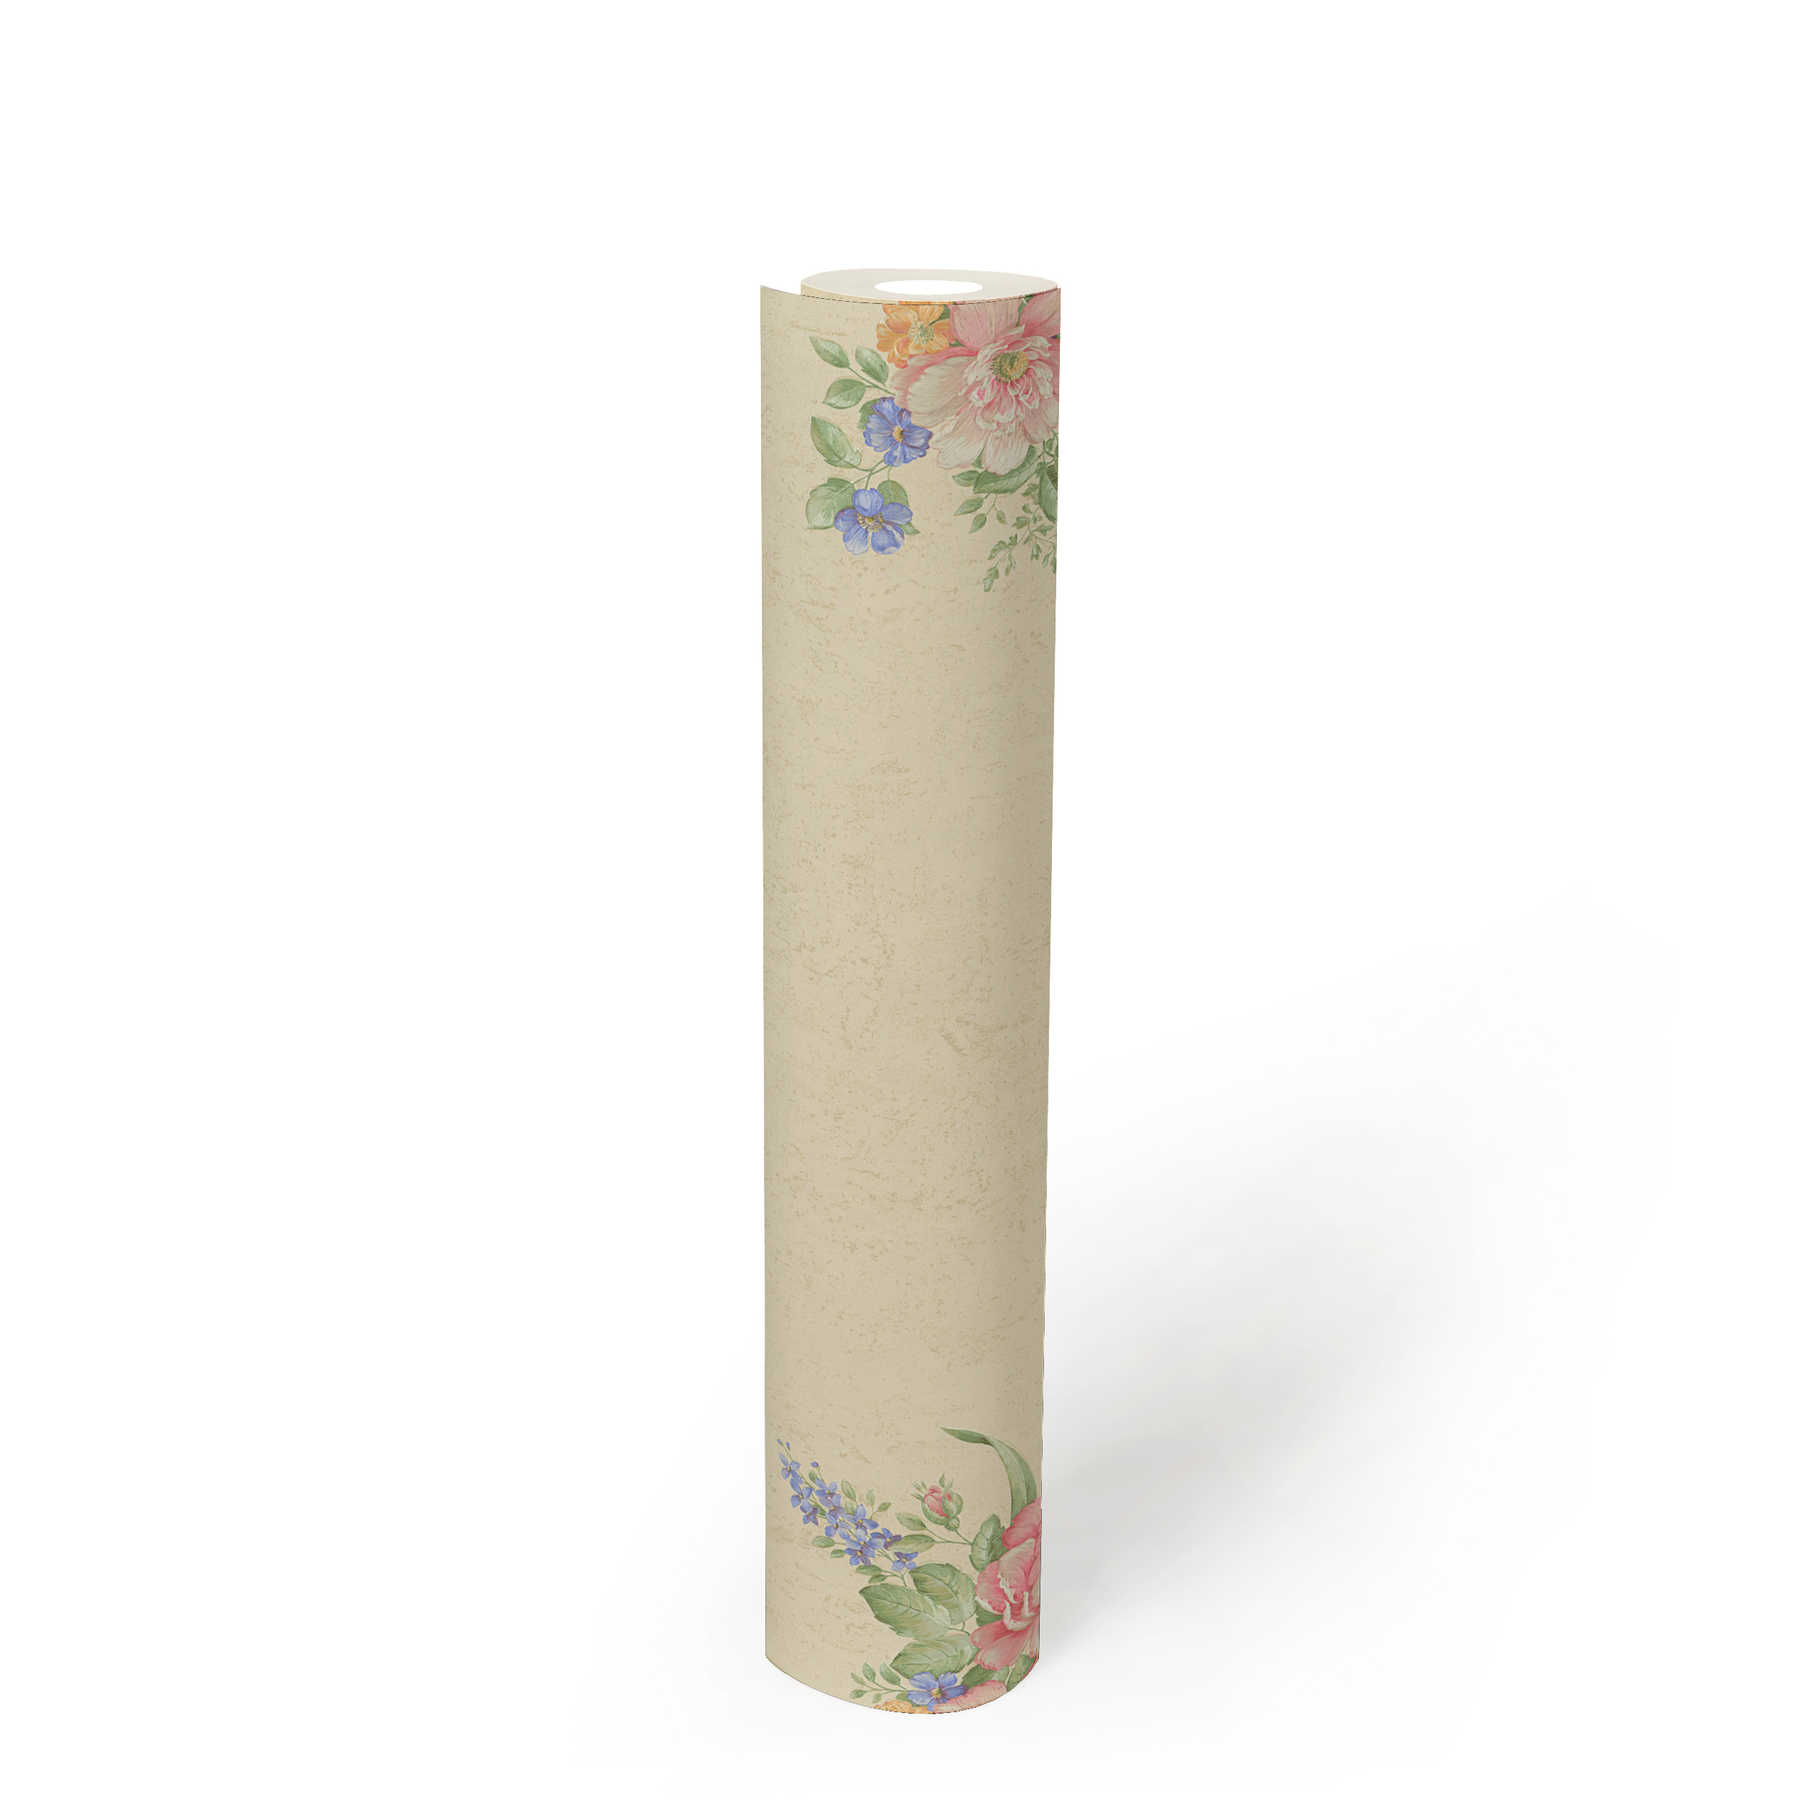             Papier peint intissé ornements floraux & motifs structurés - crème, vert, rose
        